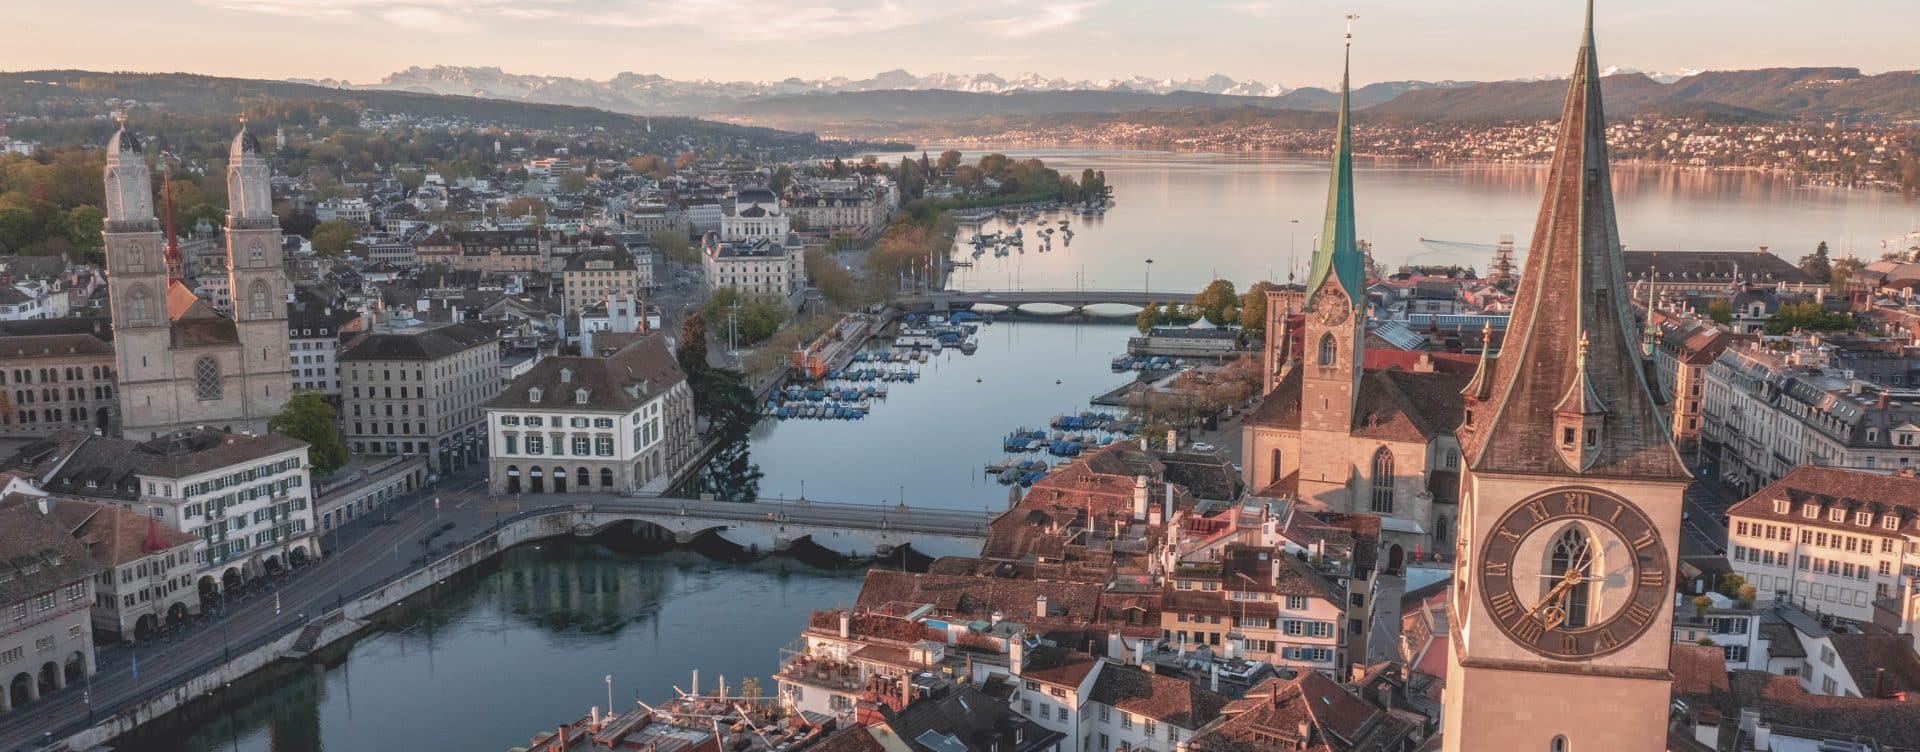 Vue aérienne de la ville de Zürich